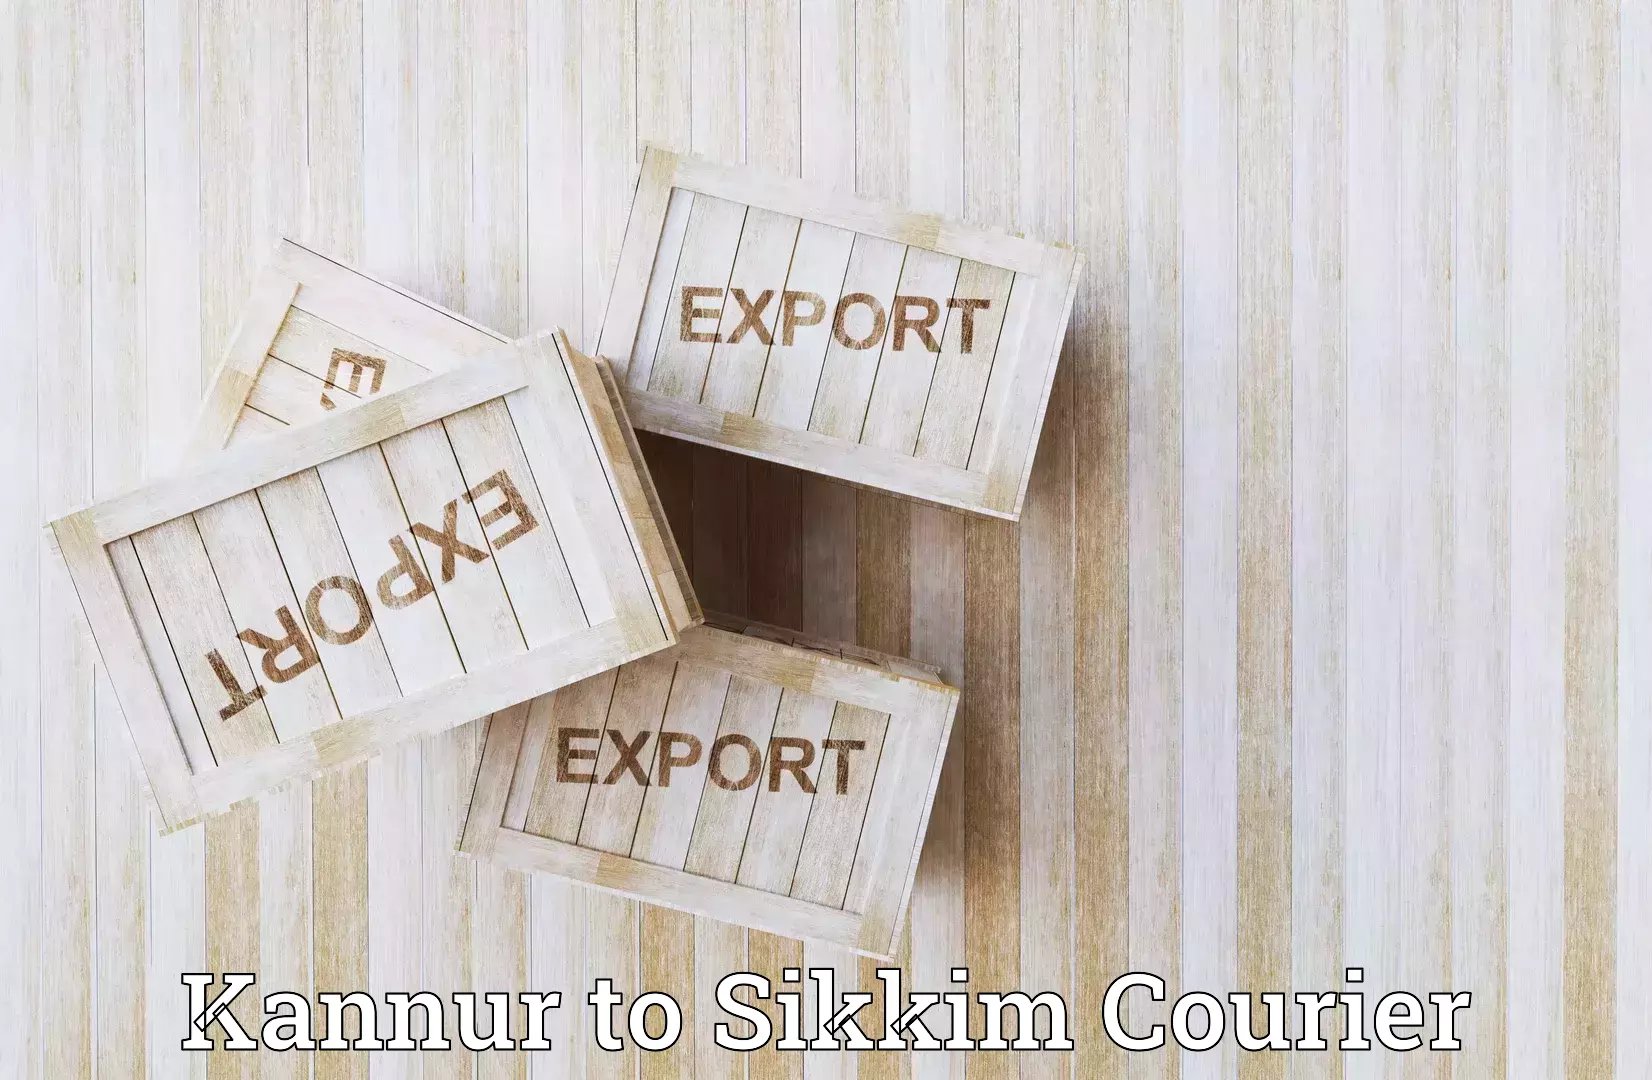 Efficient freight service Kannur to Sikkim